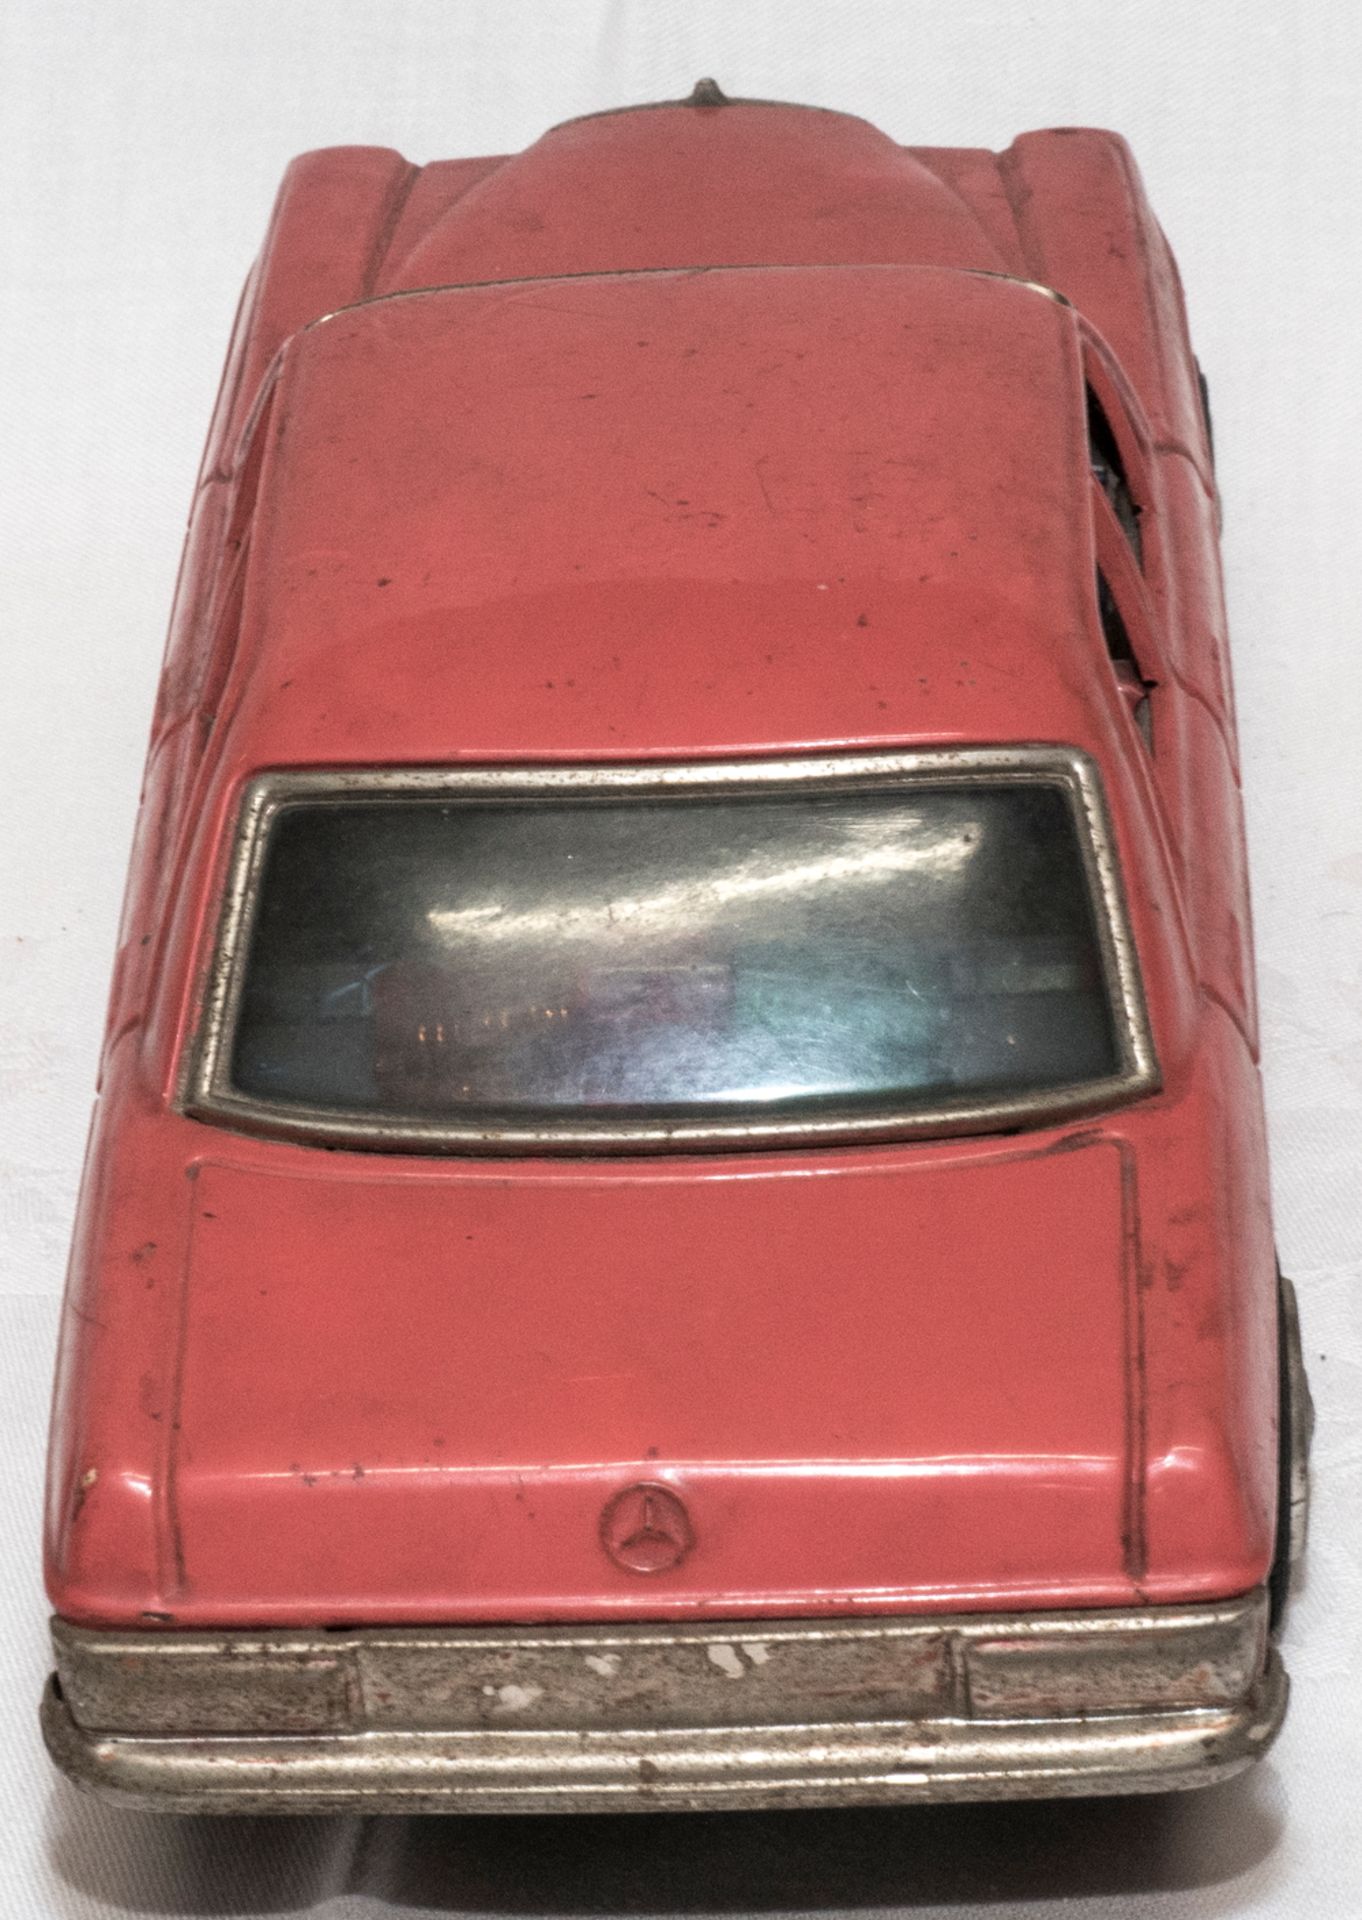 Taiyo Made in Japan, Blechspielzeug, Mercedes Benz. Ca. 70er Jahre. Batteriebetrieben. Länge ca. - Bild 4 aus 6